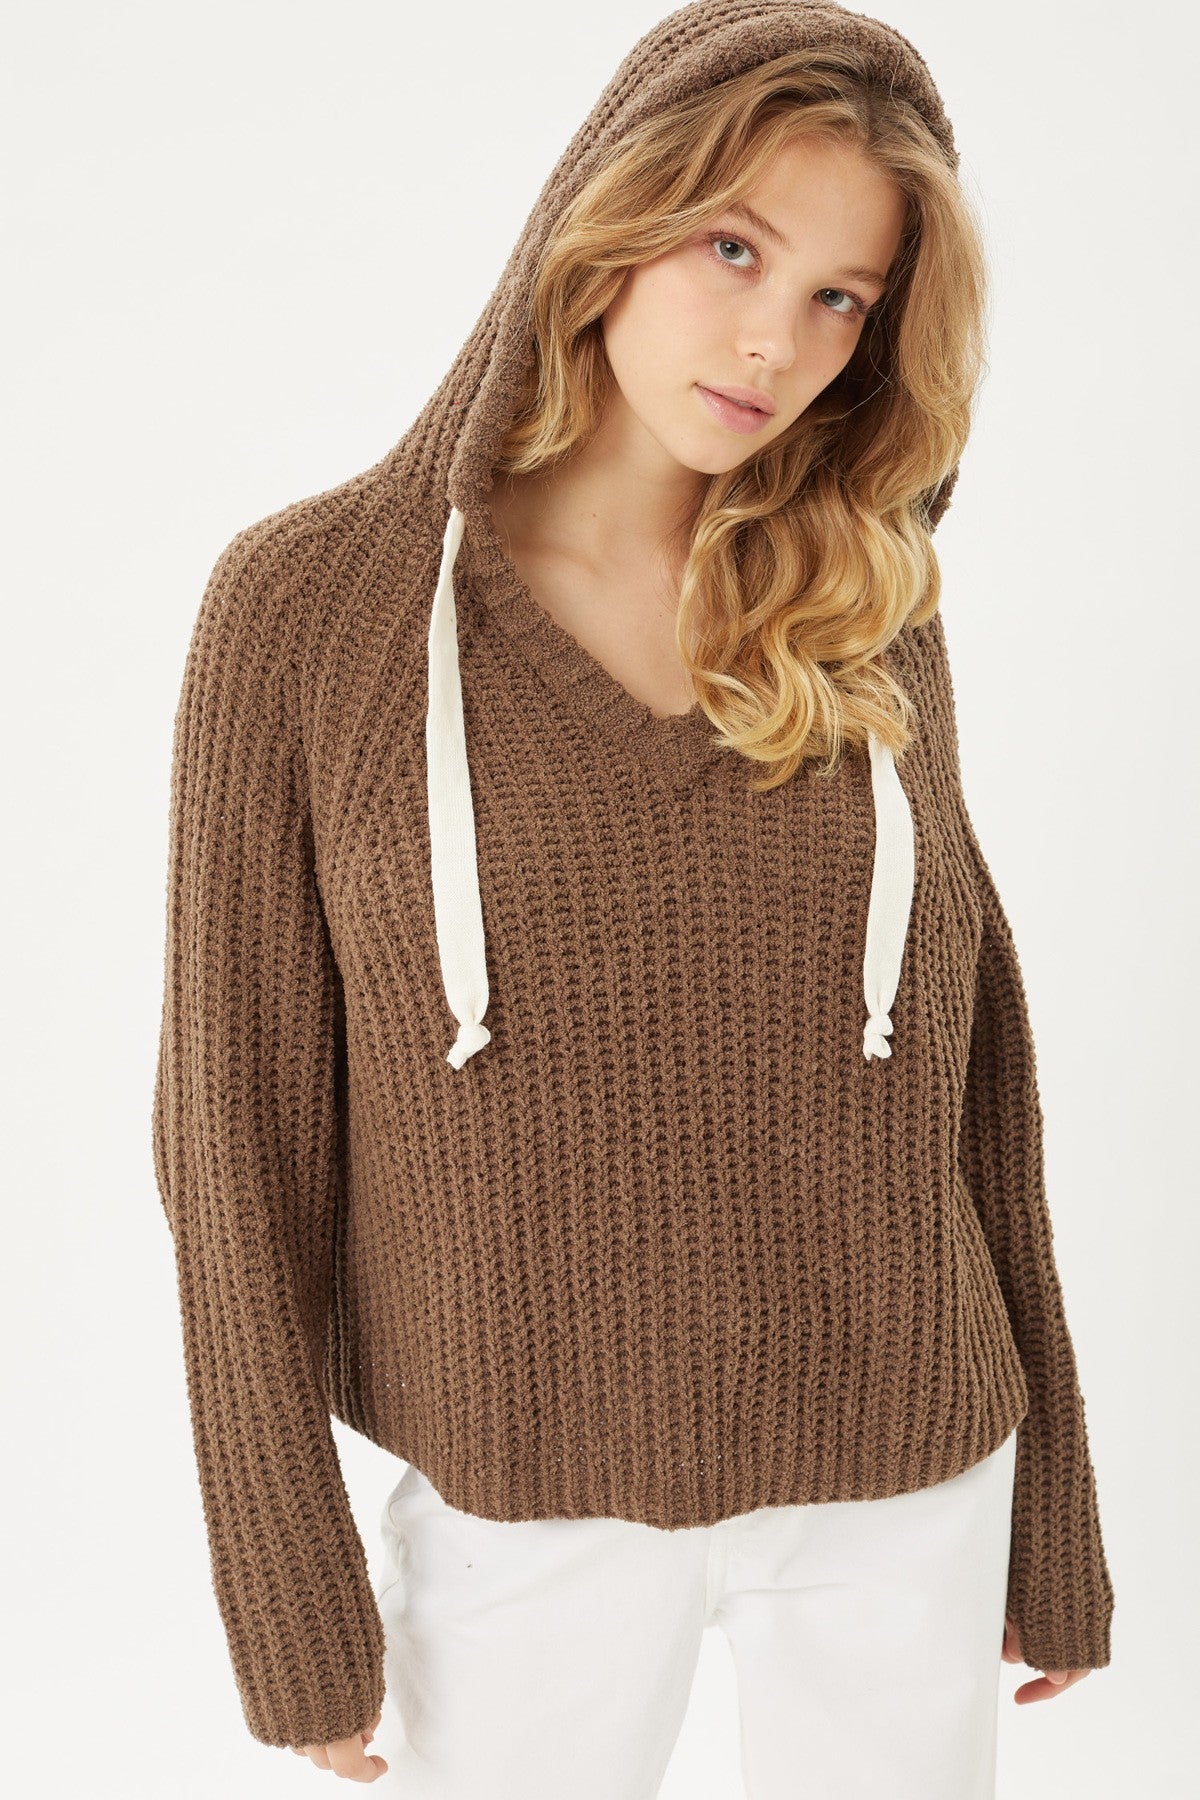 Women's Pullover Hoodie Sweater Top